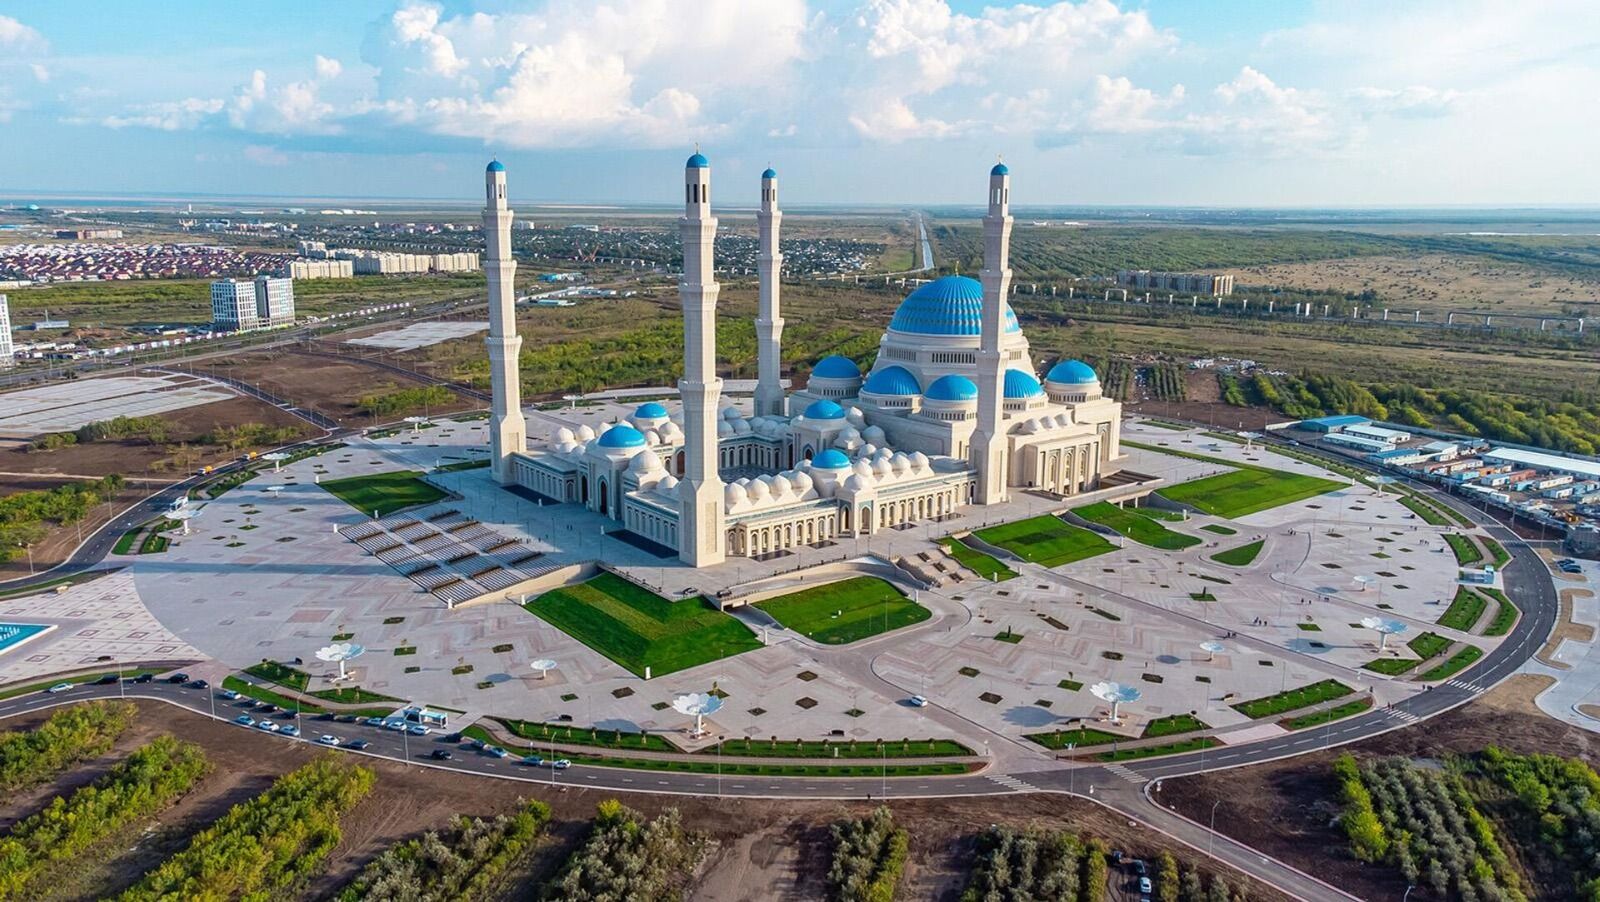 La gran Mezquita de Astana toma medidas para reducir el uso de energía y consumo de calor en un 17.5%